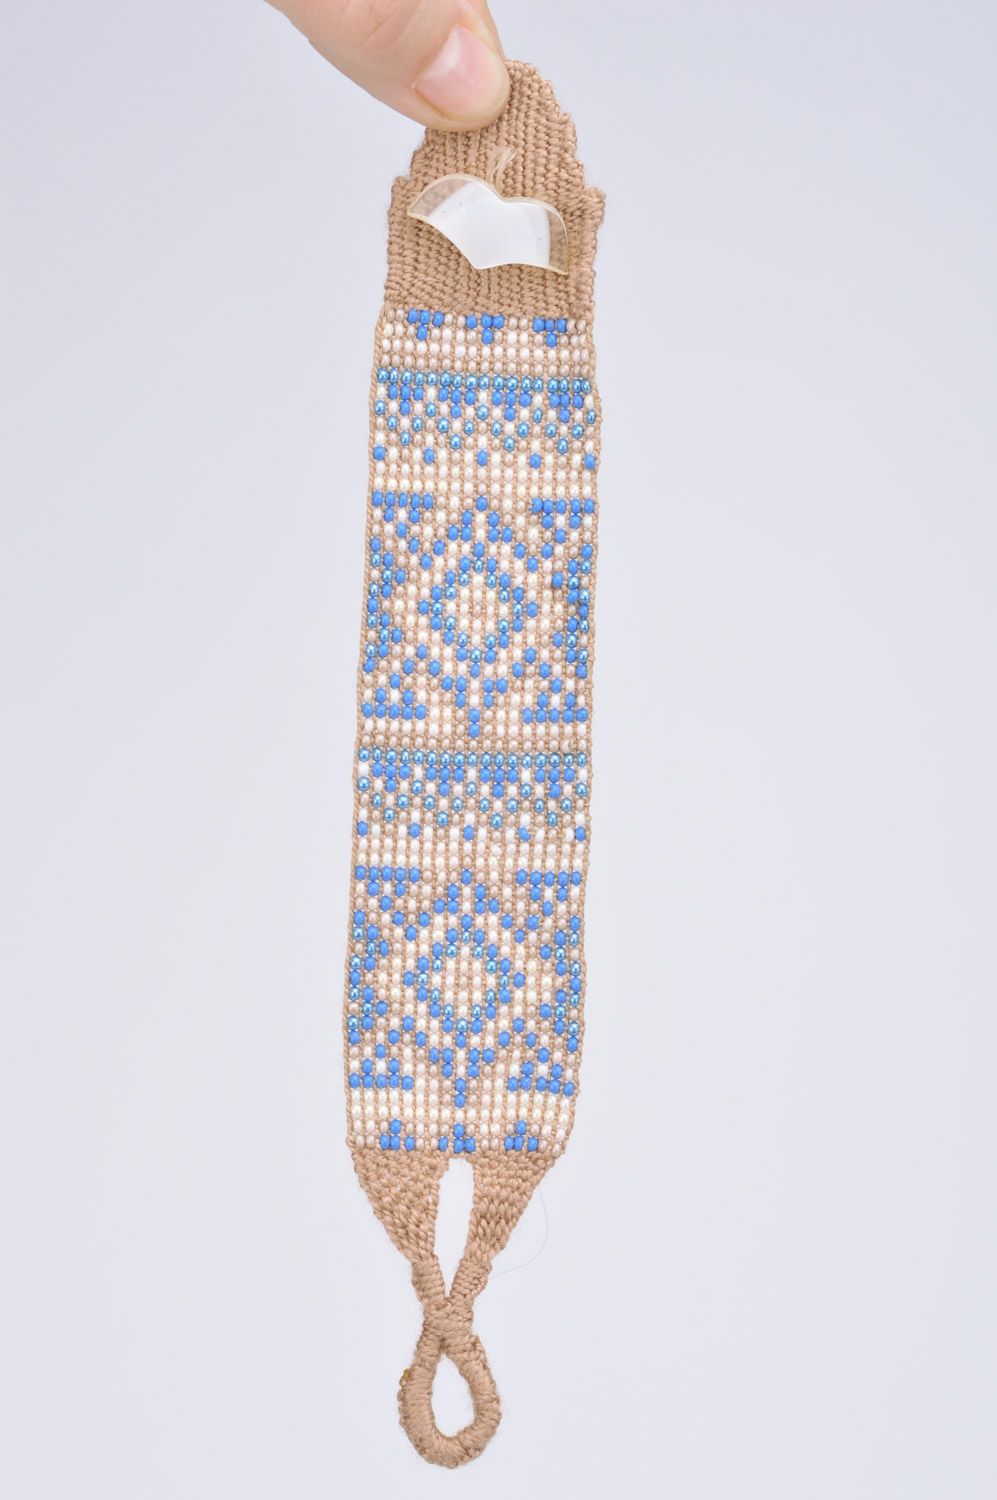 Широкий наручный браслет из бисера в этно стиле ручной работы бежевый с голубым фото 3